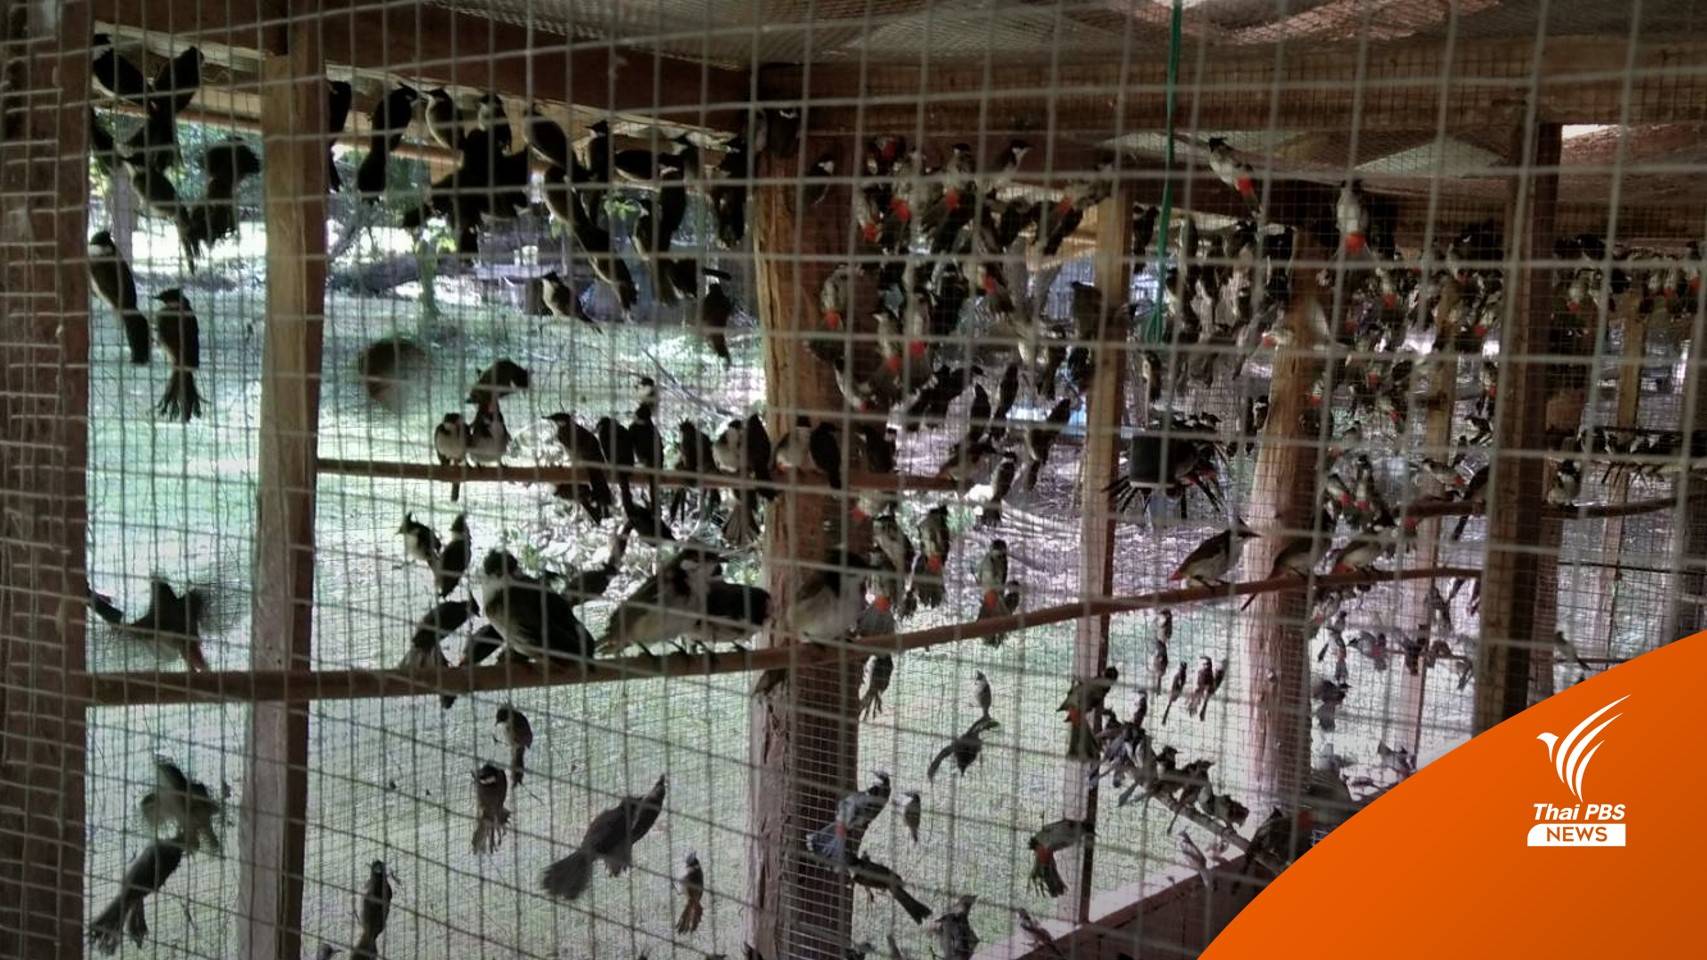 ยึด "นกปรอดหัวโขน" 1,700 ตัว ลอบนำเข้าชายแดนไทย-ลาว